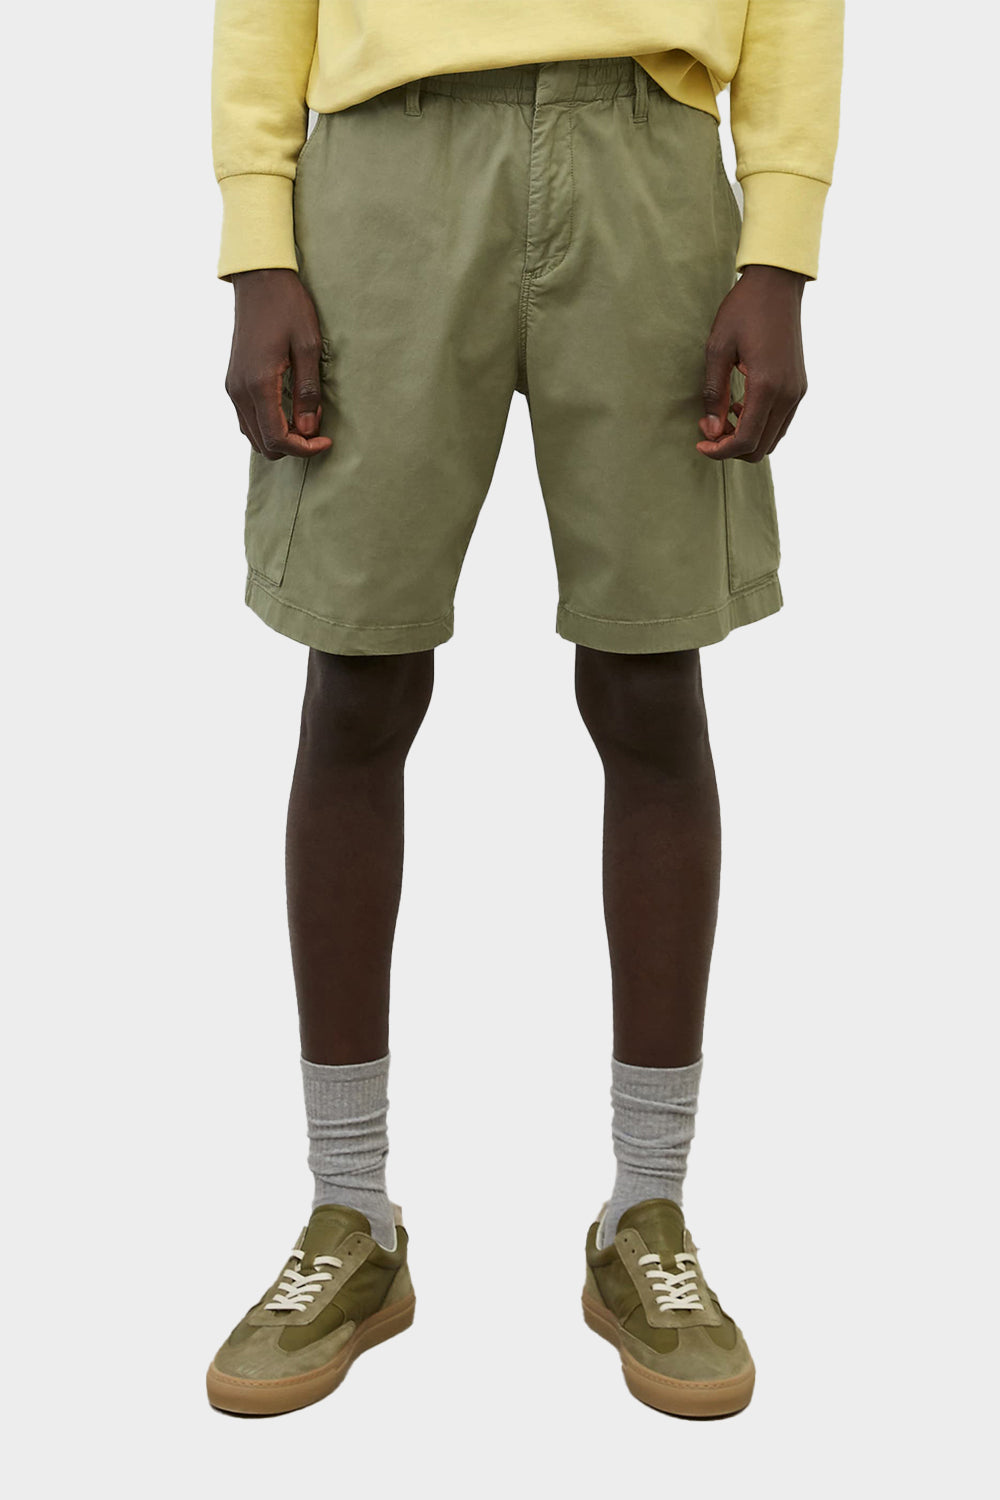 מכנסיים לגברים בצבע ירוק MARC O POLO MARC O'POLO Vendome online | ונדום .